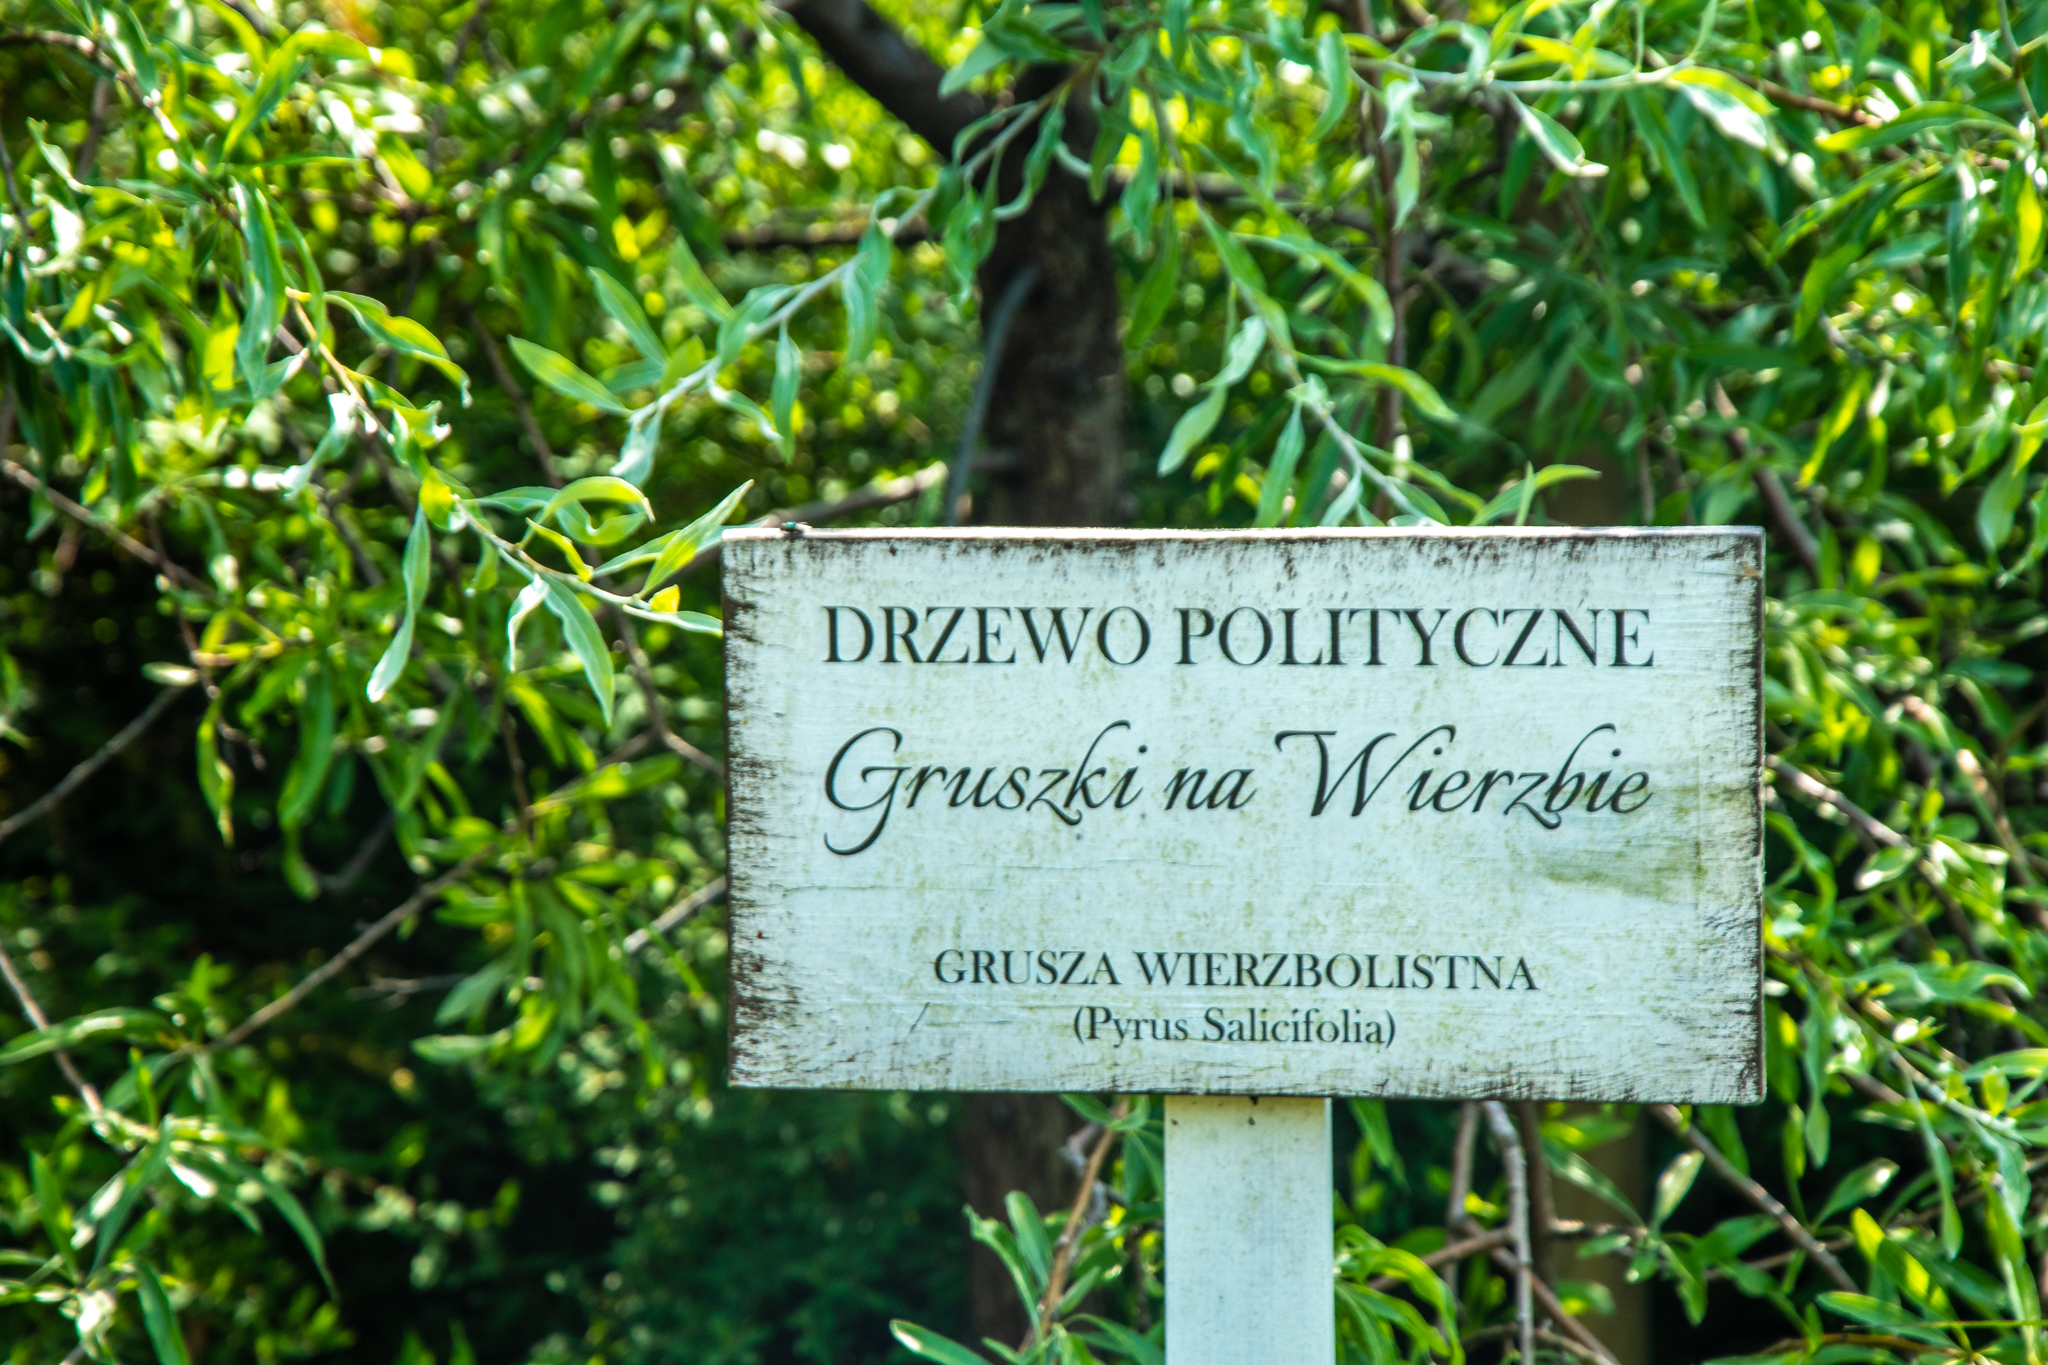 Tablica na tle gruszy, z napisem "Drzewo Polityczne Gruszki na Wierzbie".